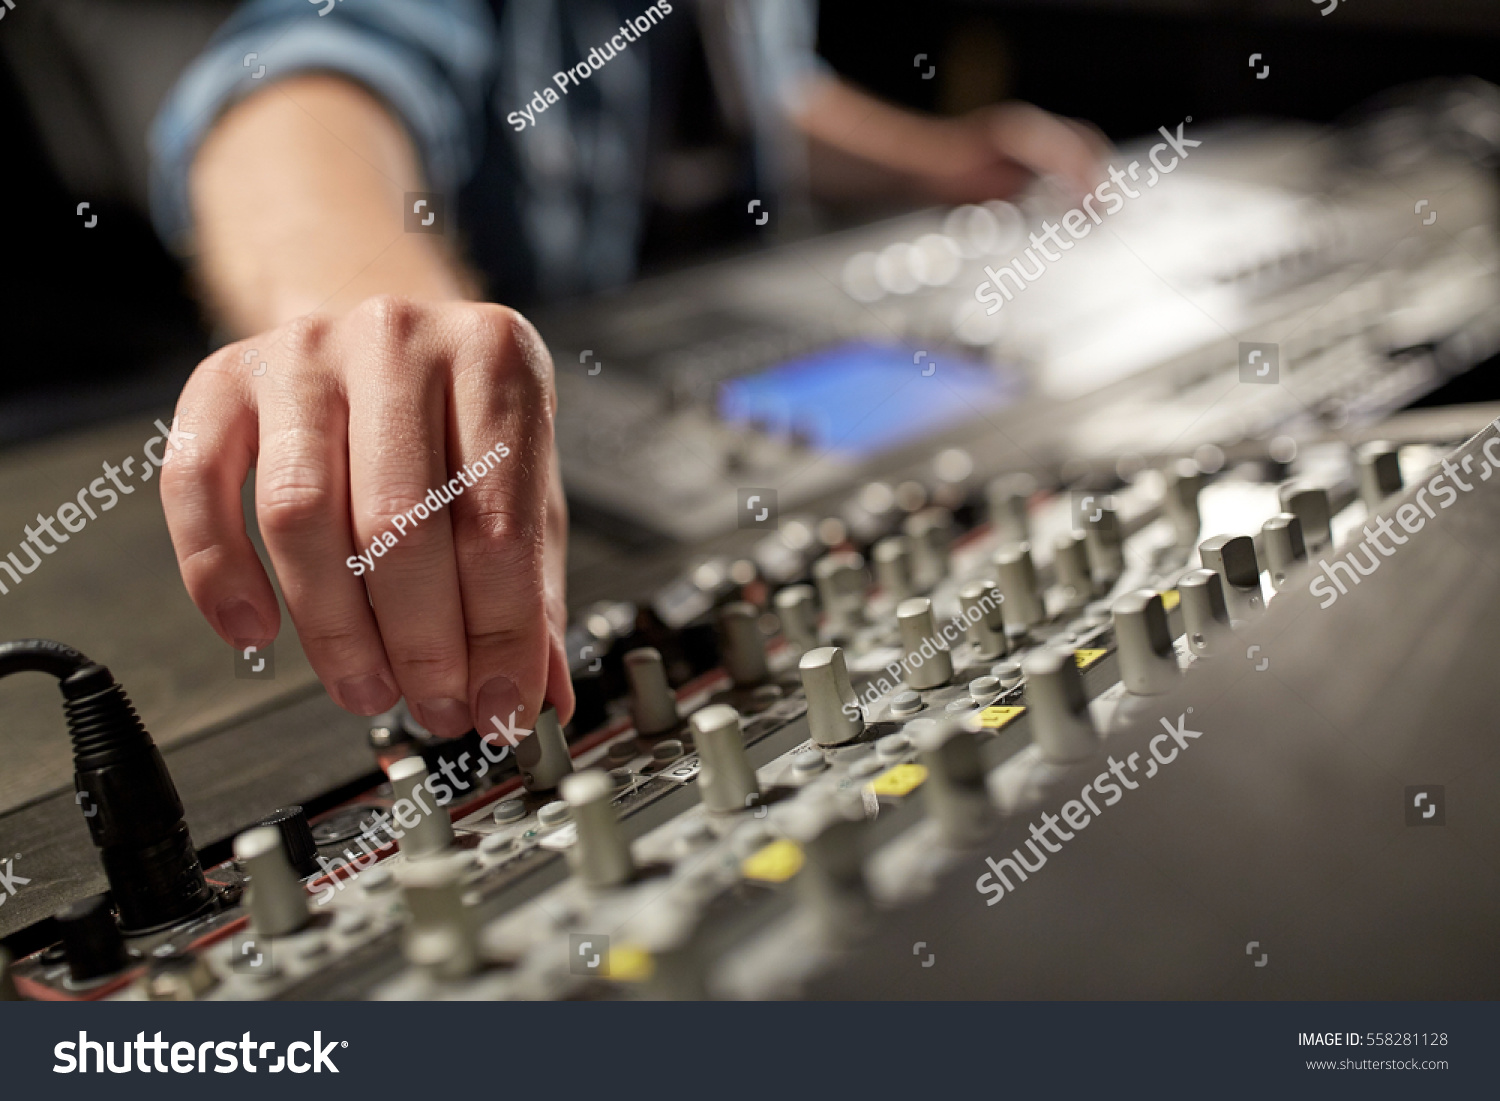 13,760 Audio technics Images, Stock Photos & Vectors | Shutterstock